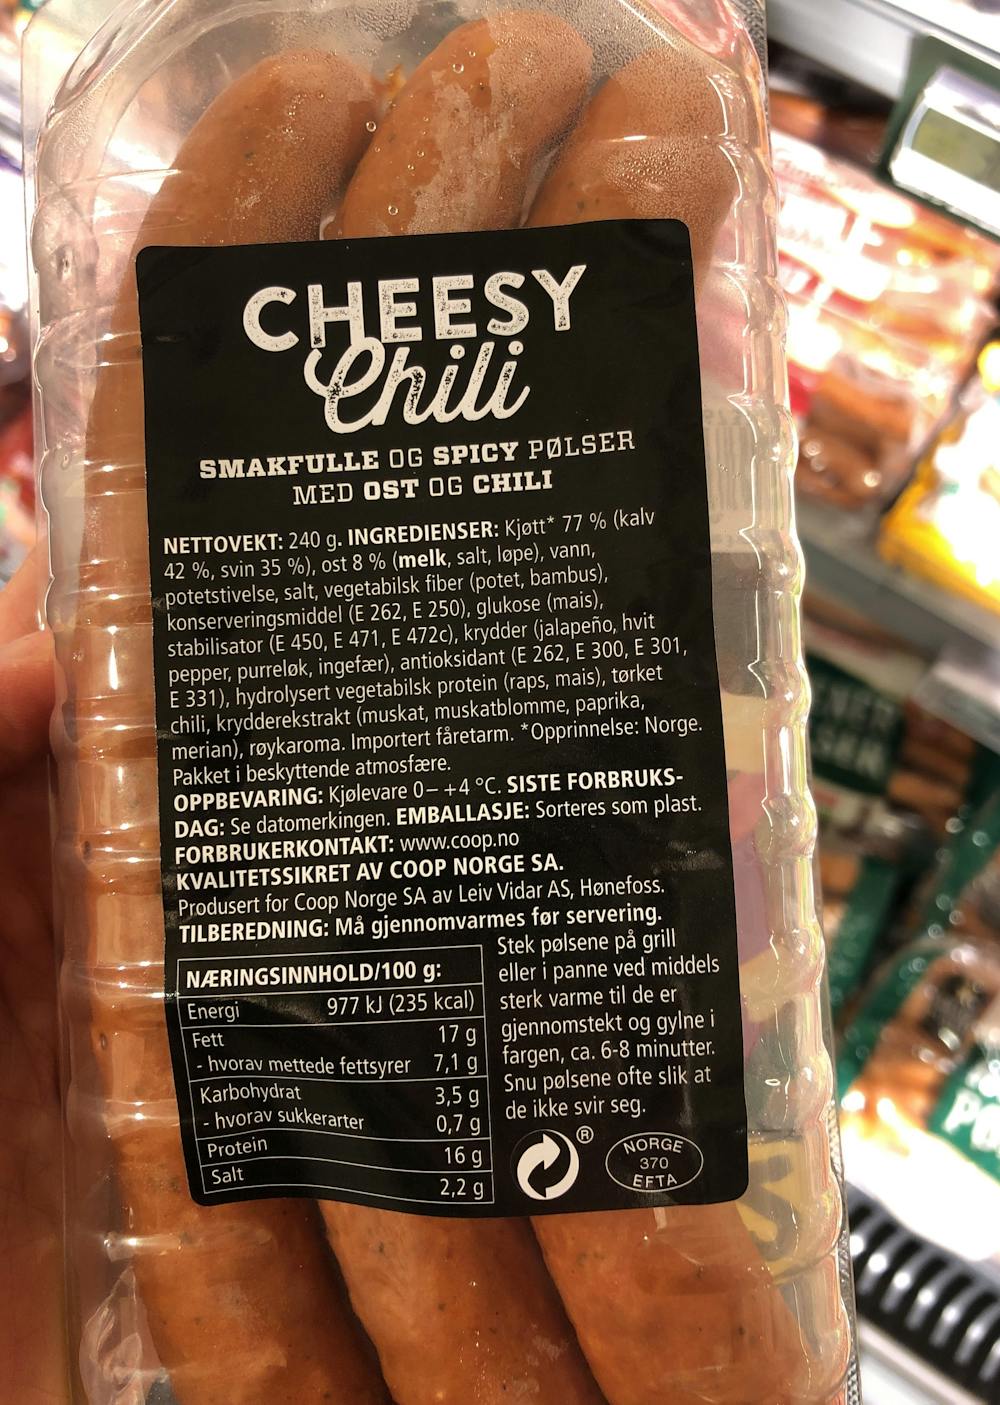 Ingredienslisten til Cheesy chili, Coop